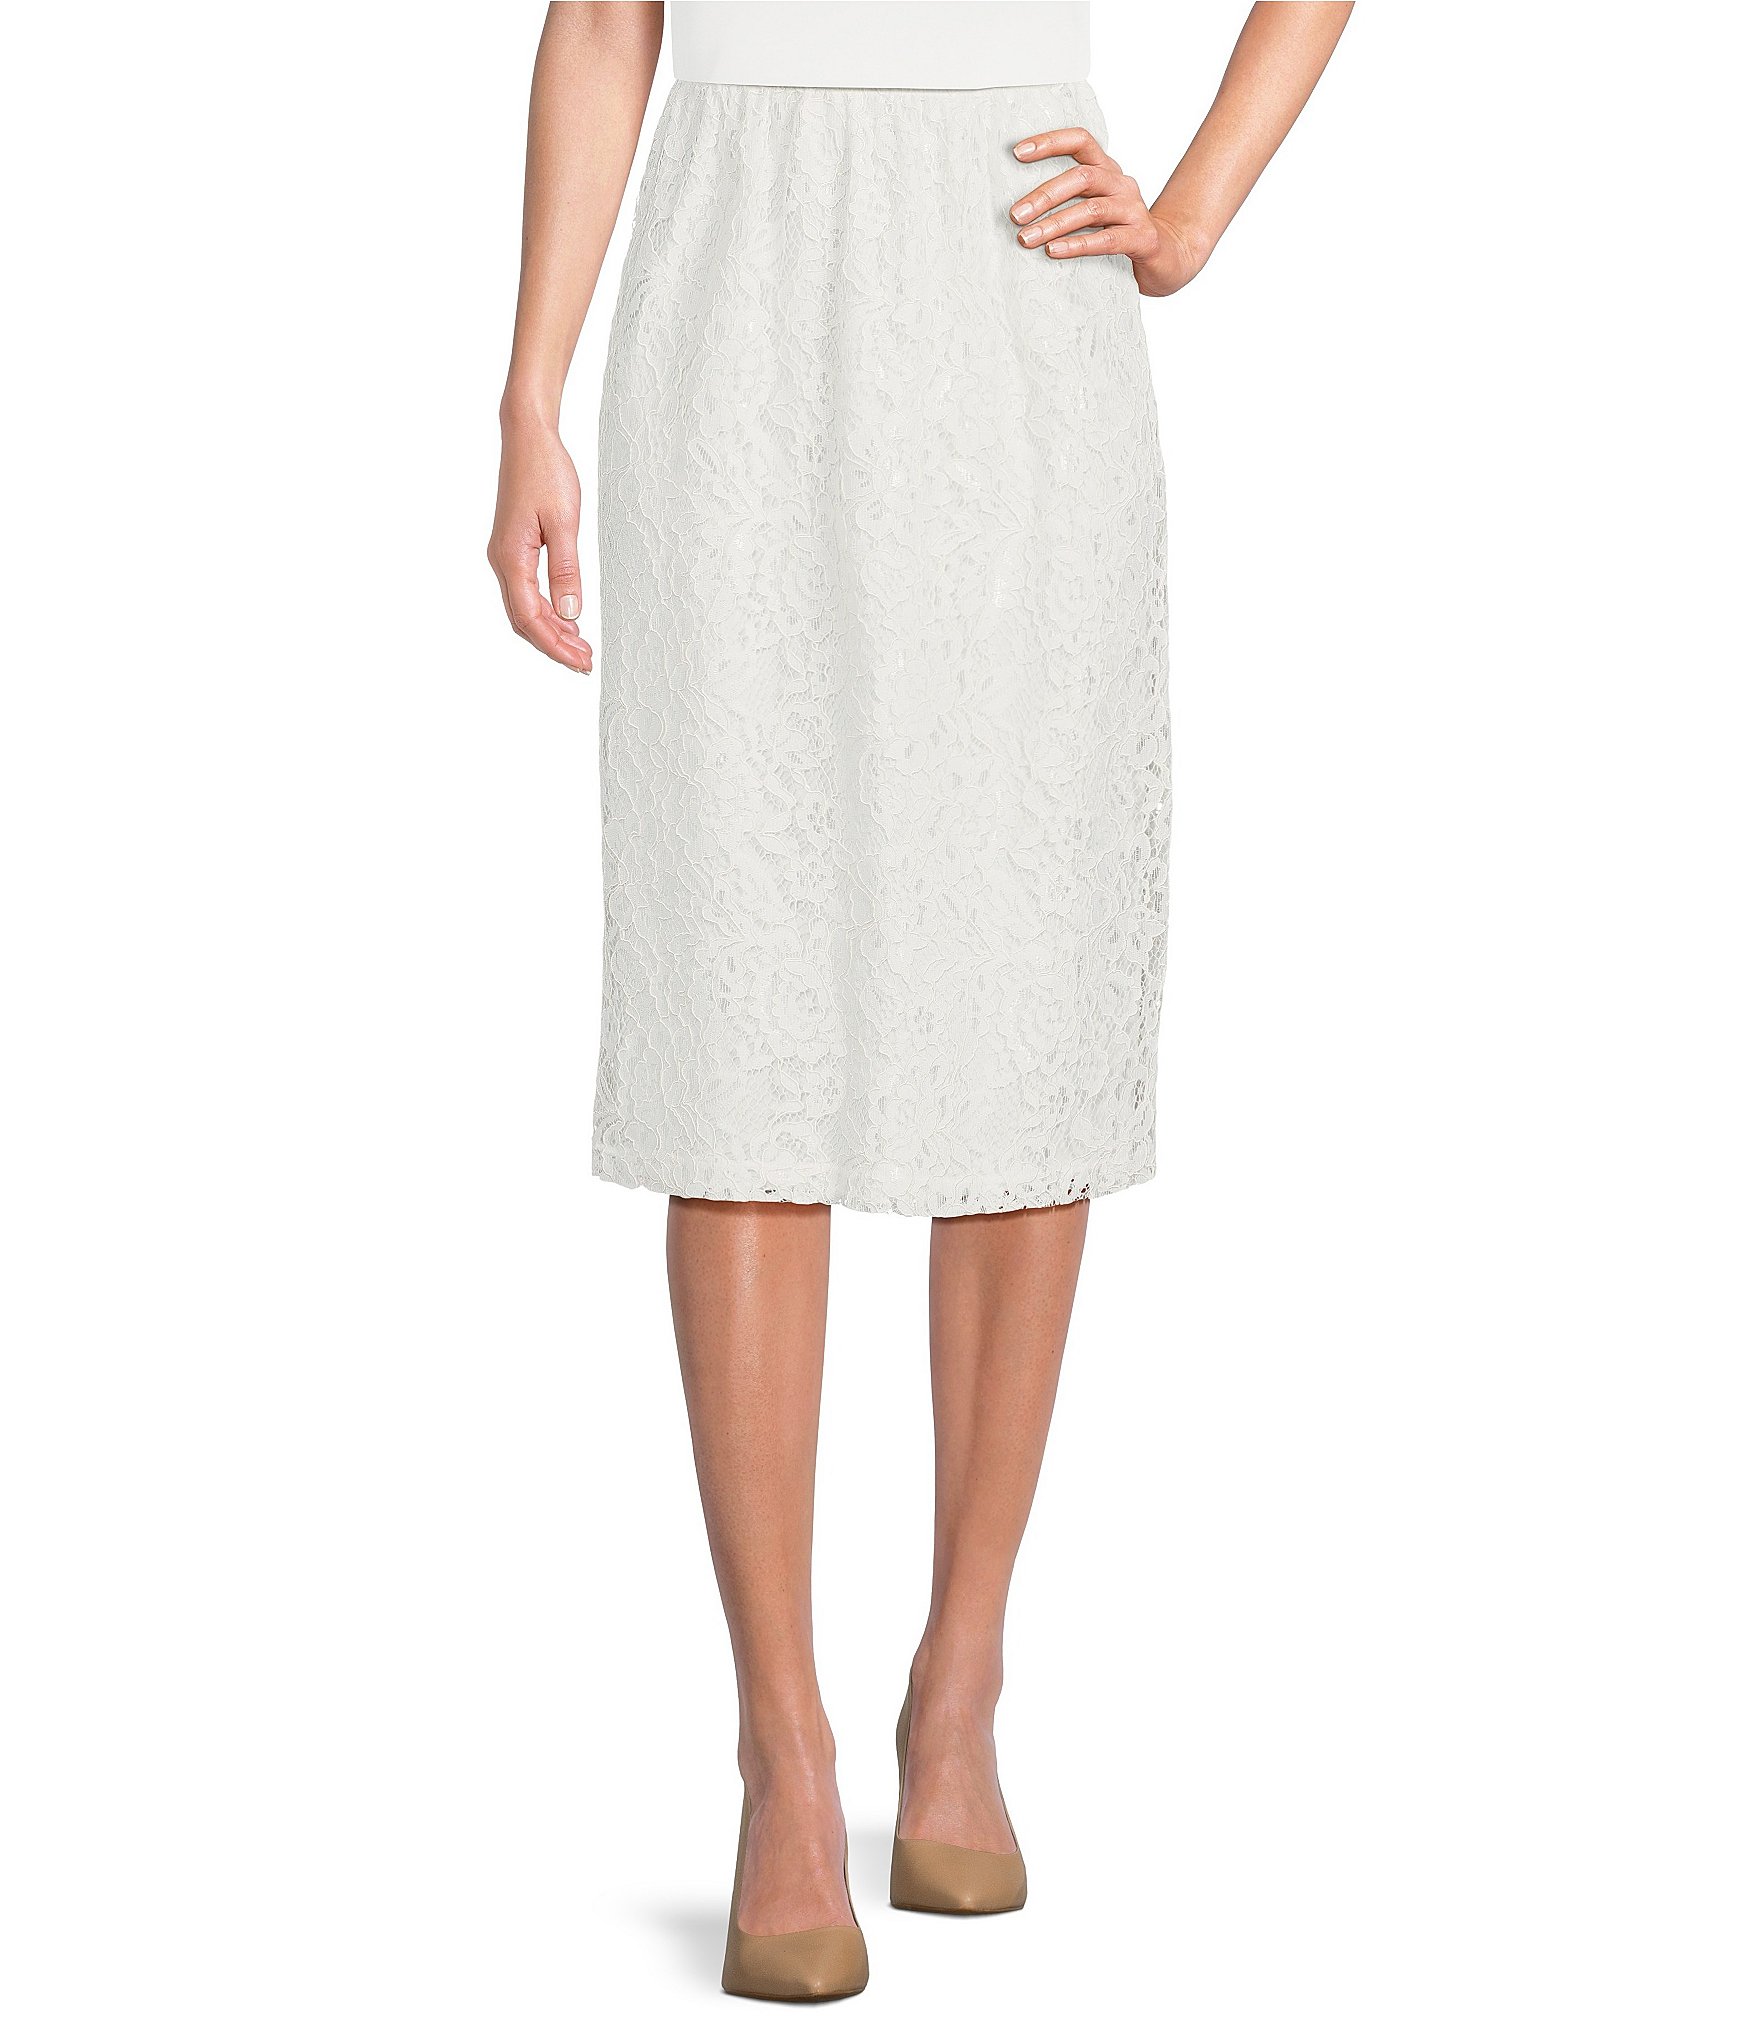 white pencil skirt: Women's Skirts